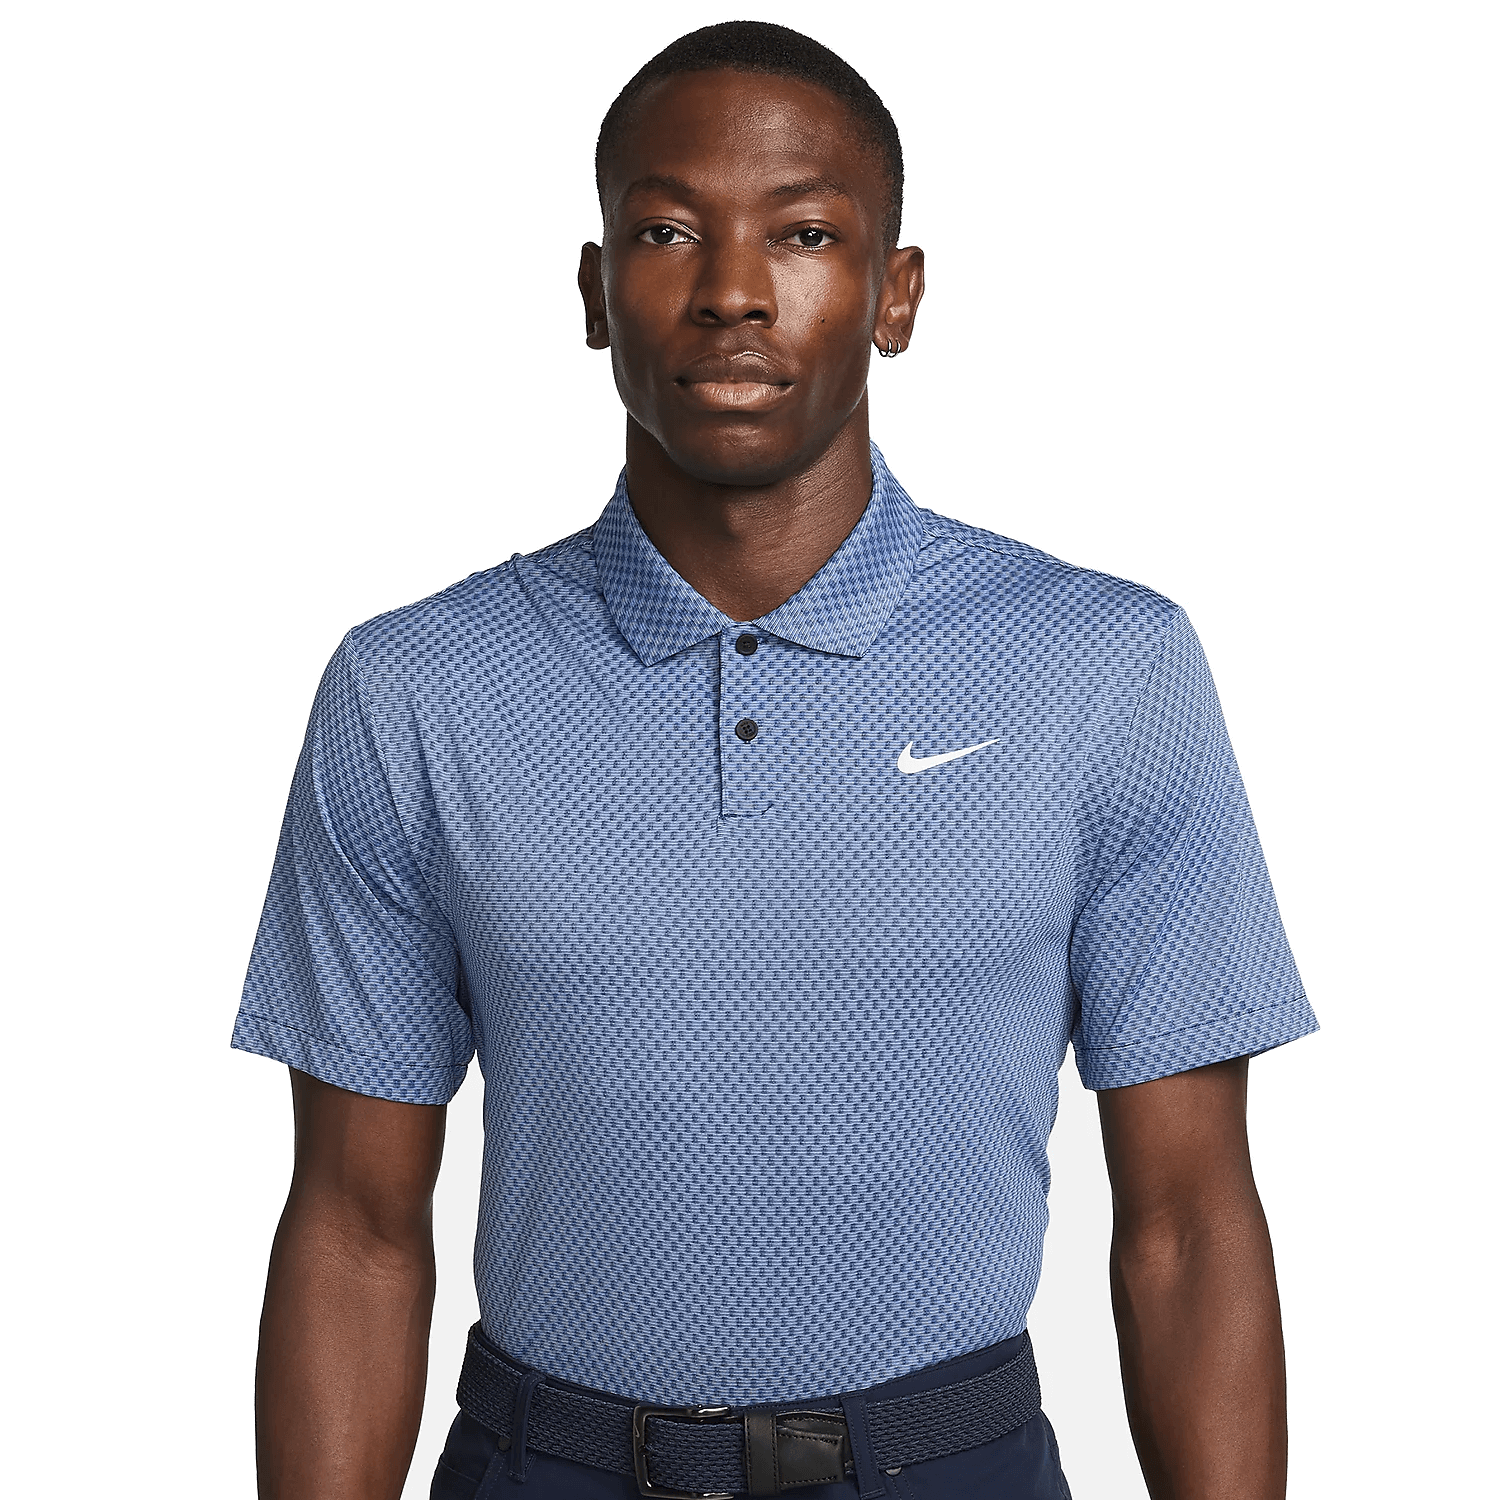 Nike Dri-FIT Tour Jacquard Polo Shirt